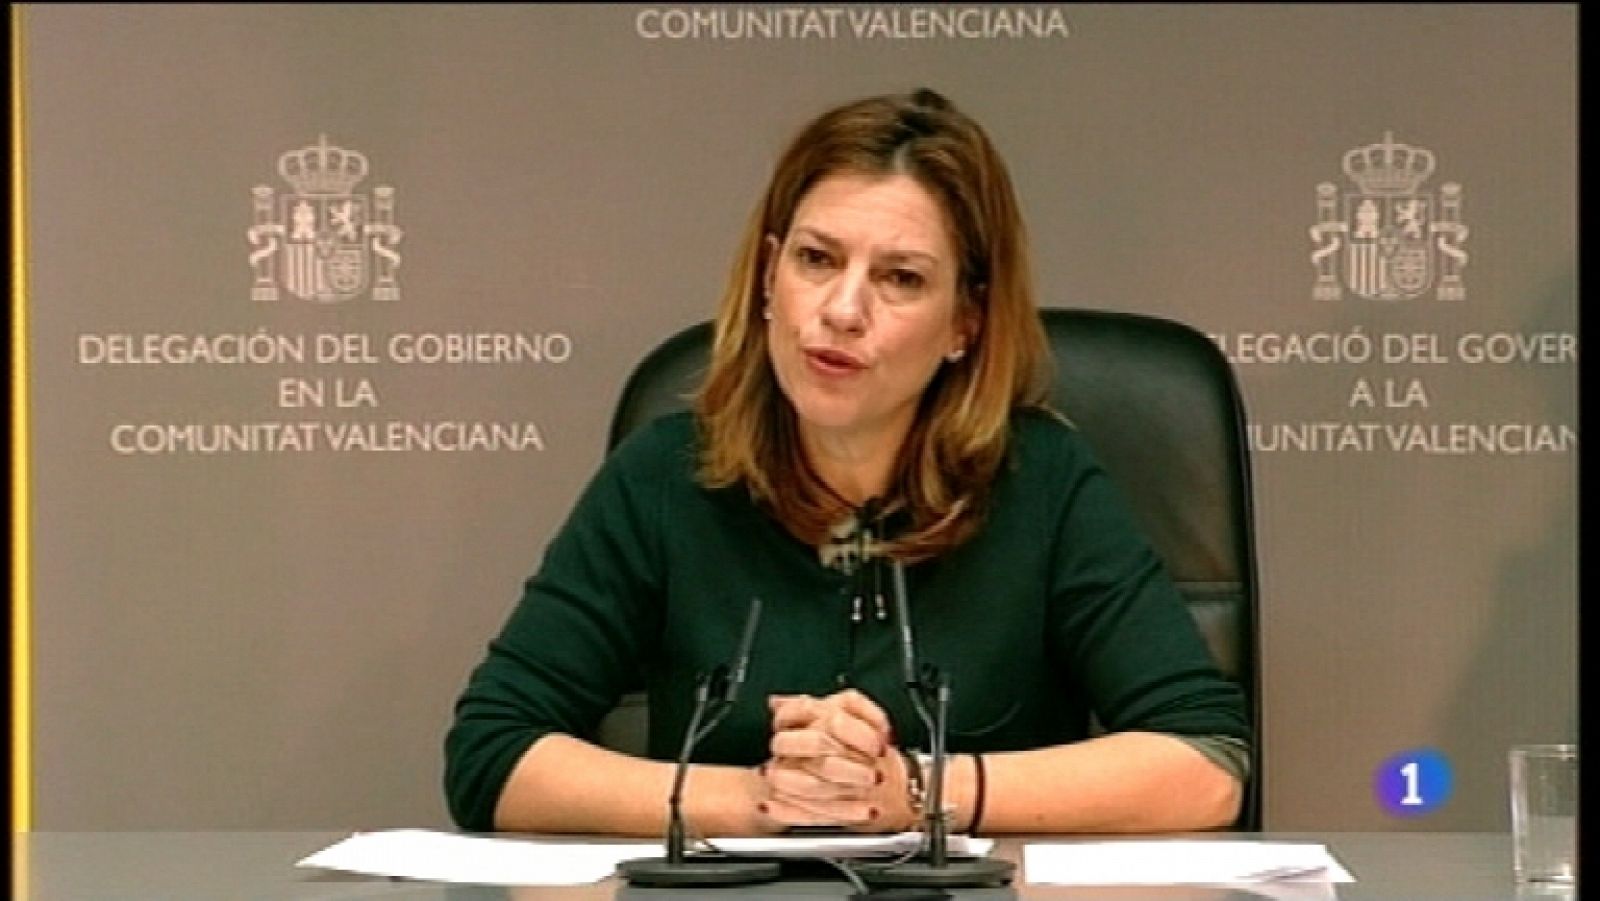 L'informatiu - Comunitat Valenciana: L'Informatiu - Comunitat Valenciana -  21/02/12 | RTVE Play